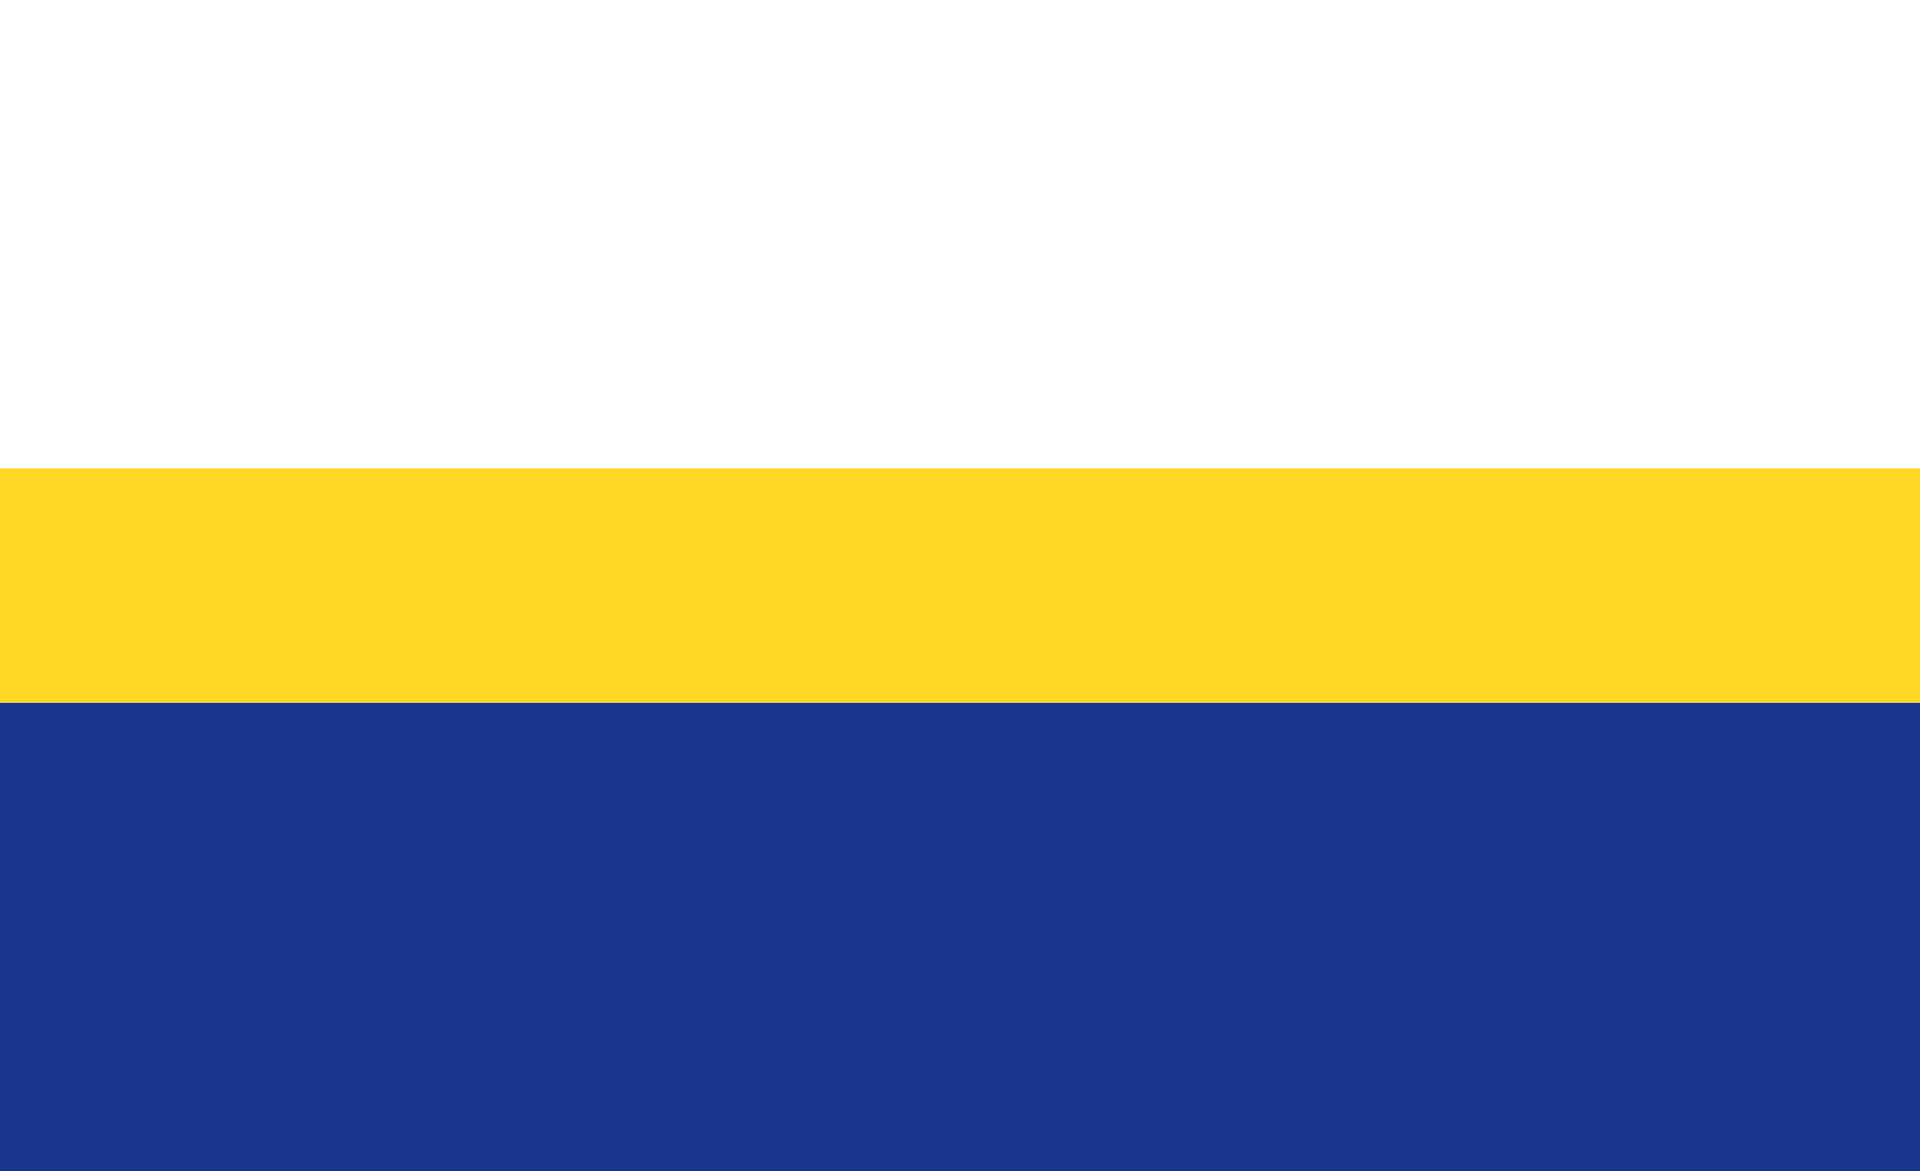 Flaga Gminy Pleśna -3 paski - biały u góry, żółty w środku i granatowy na dole